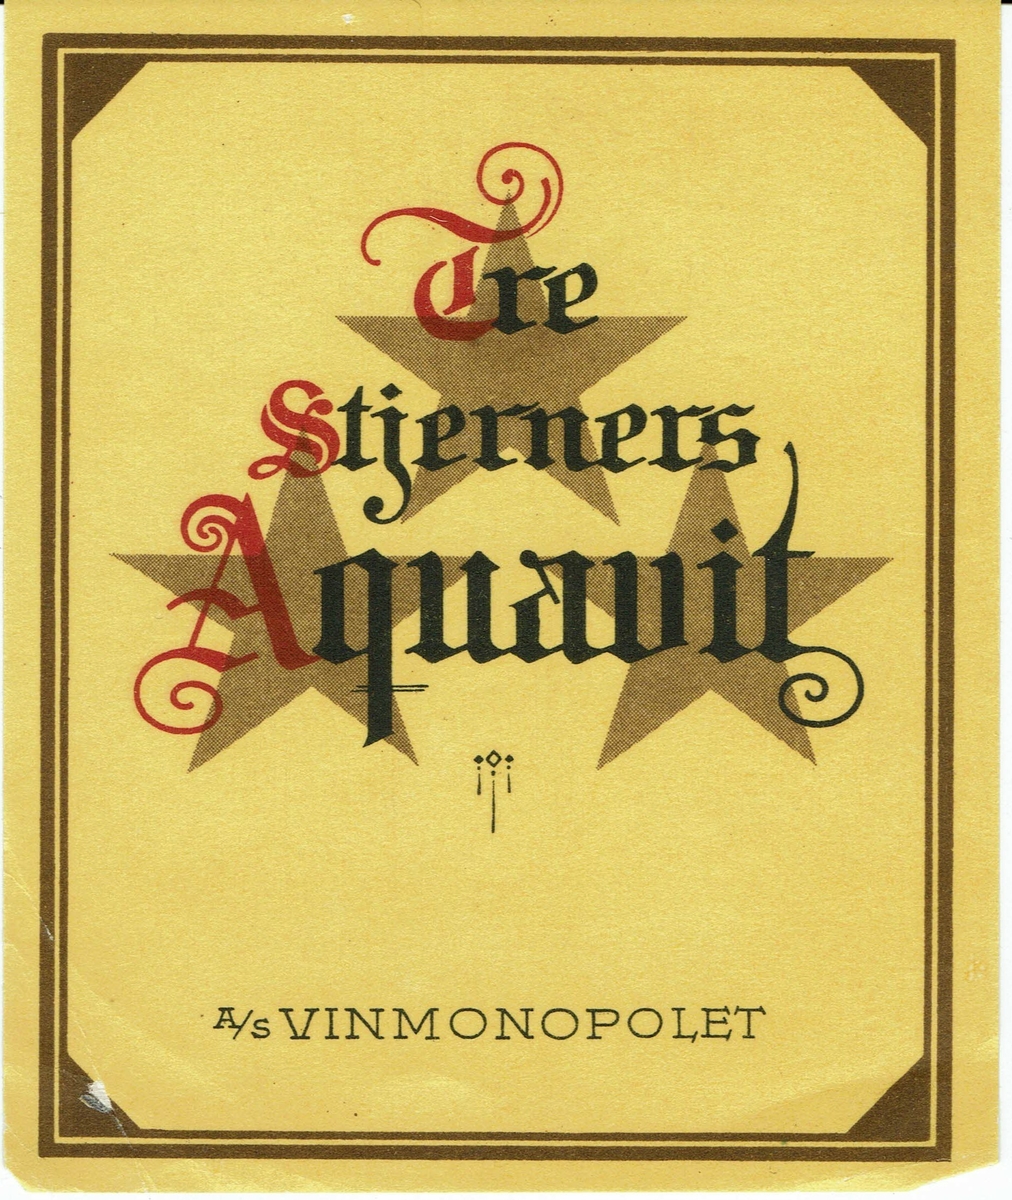 Tre Stjerners Aquavit. A/S Vinmonopolet. 